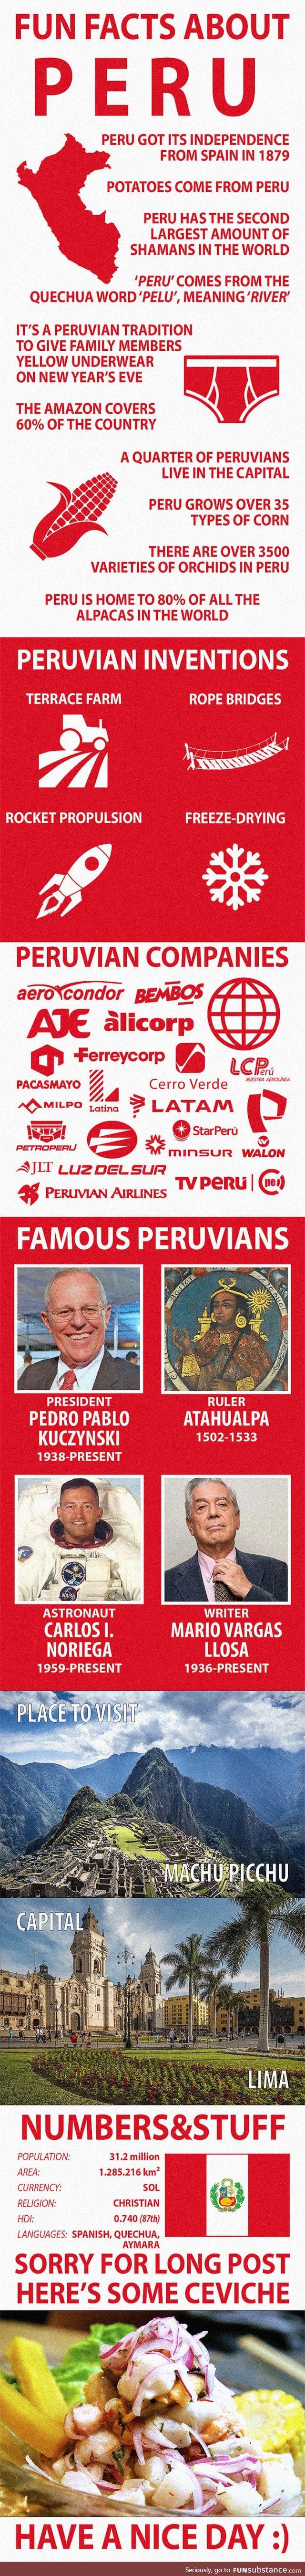 Fun Facts about Peru